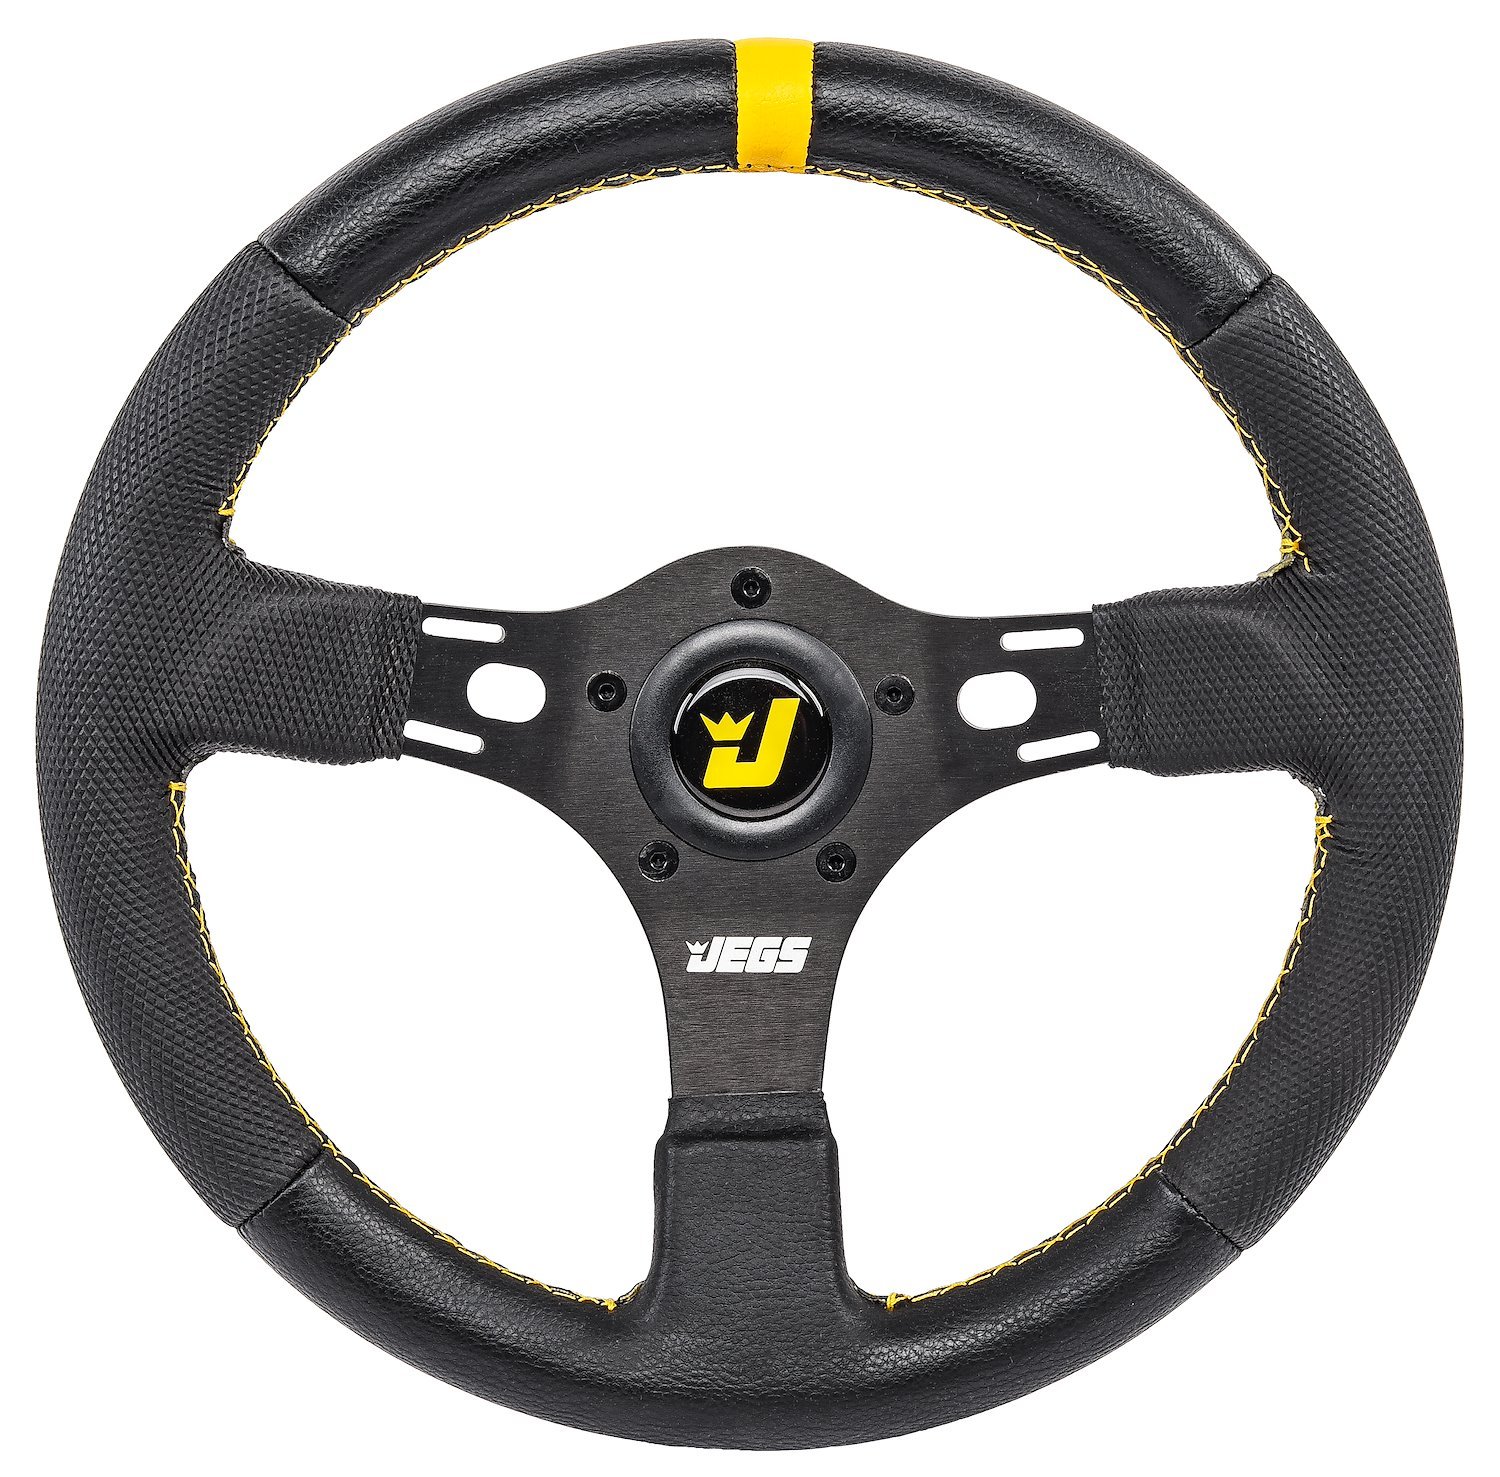 Premium Drag Race Steering Wheel, Black 3-Spoke with